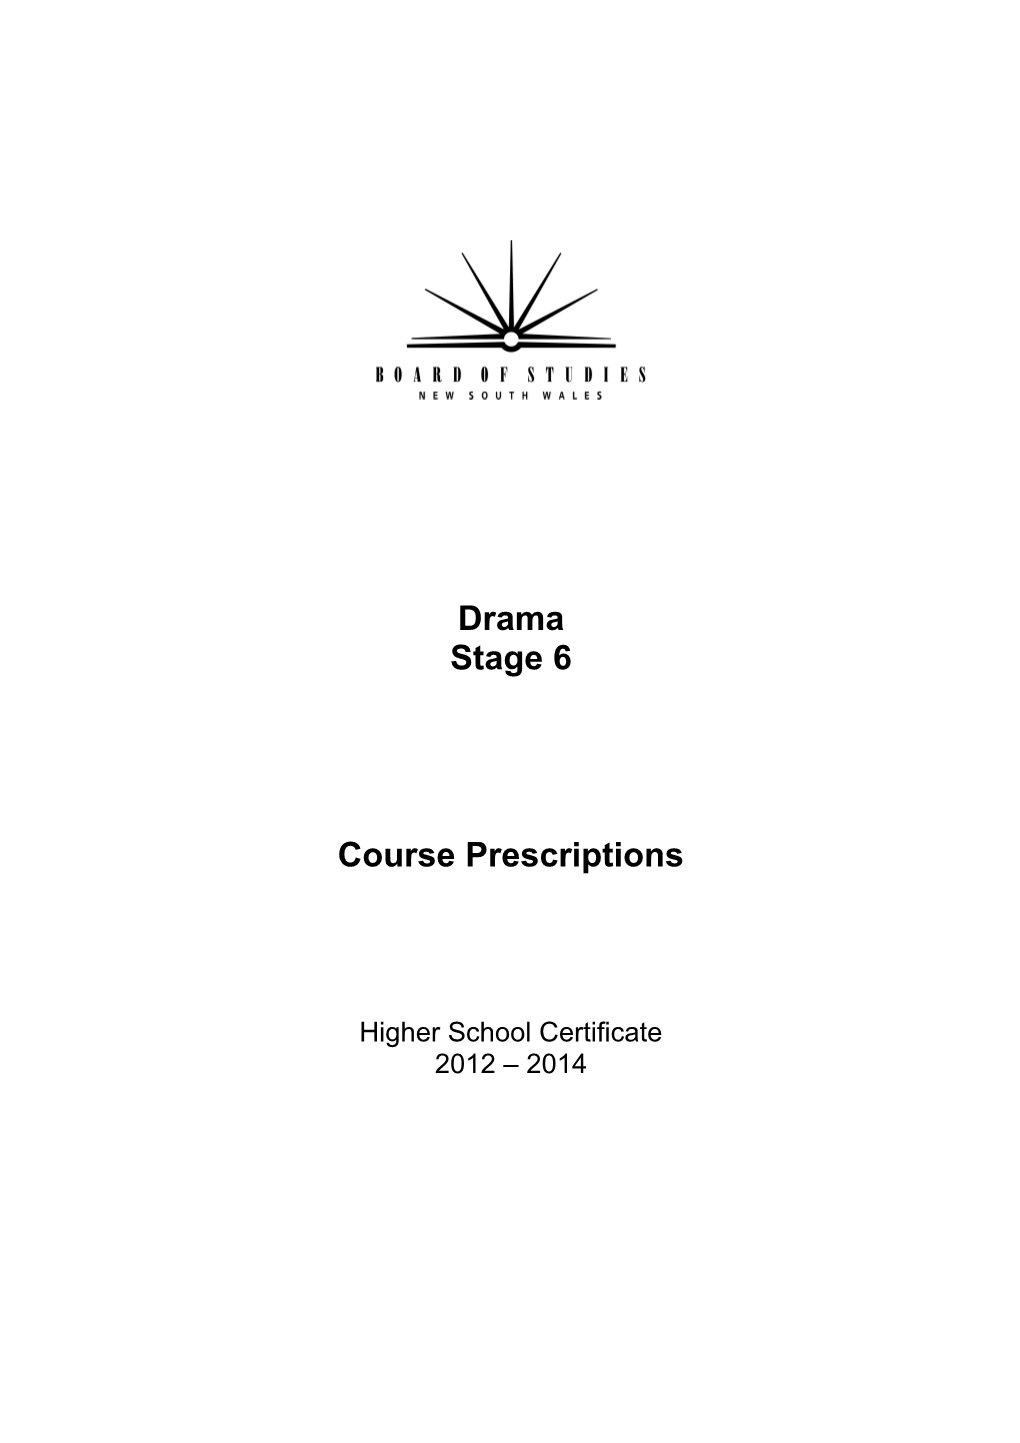 Drama Stage 6 Course Prescriptions